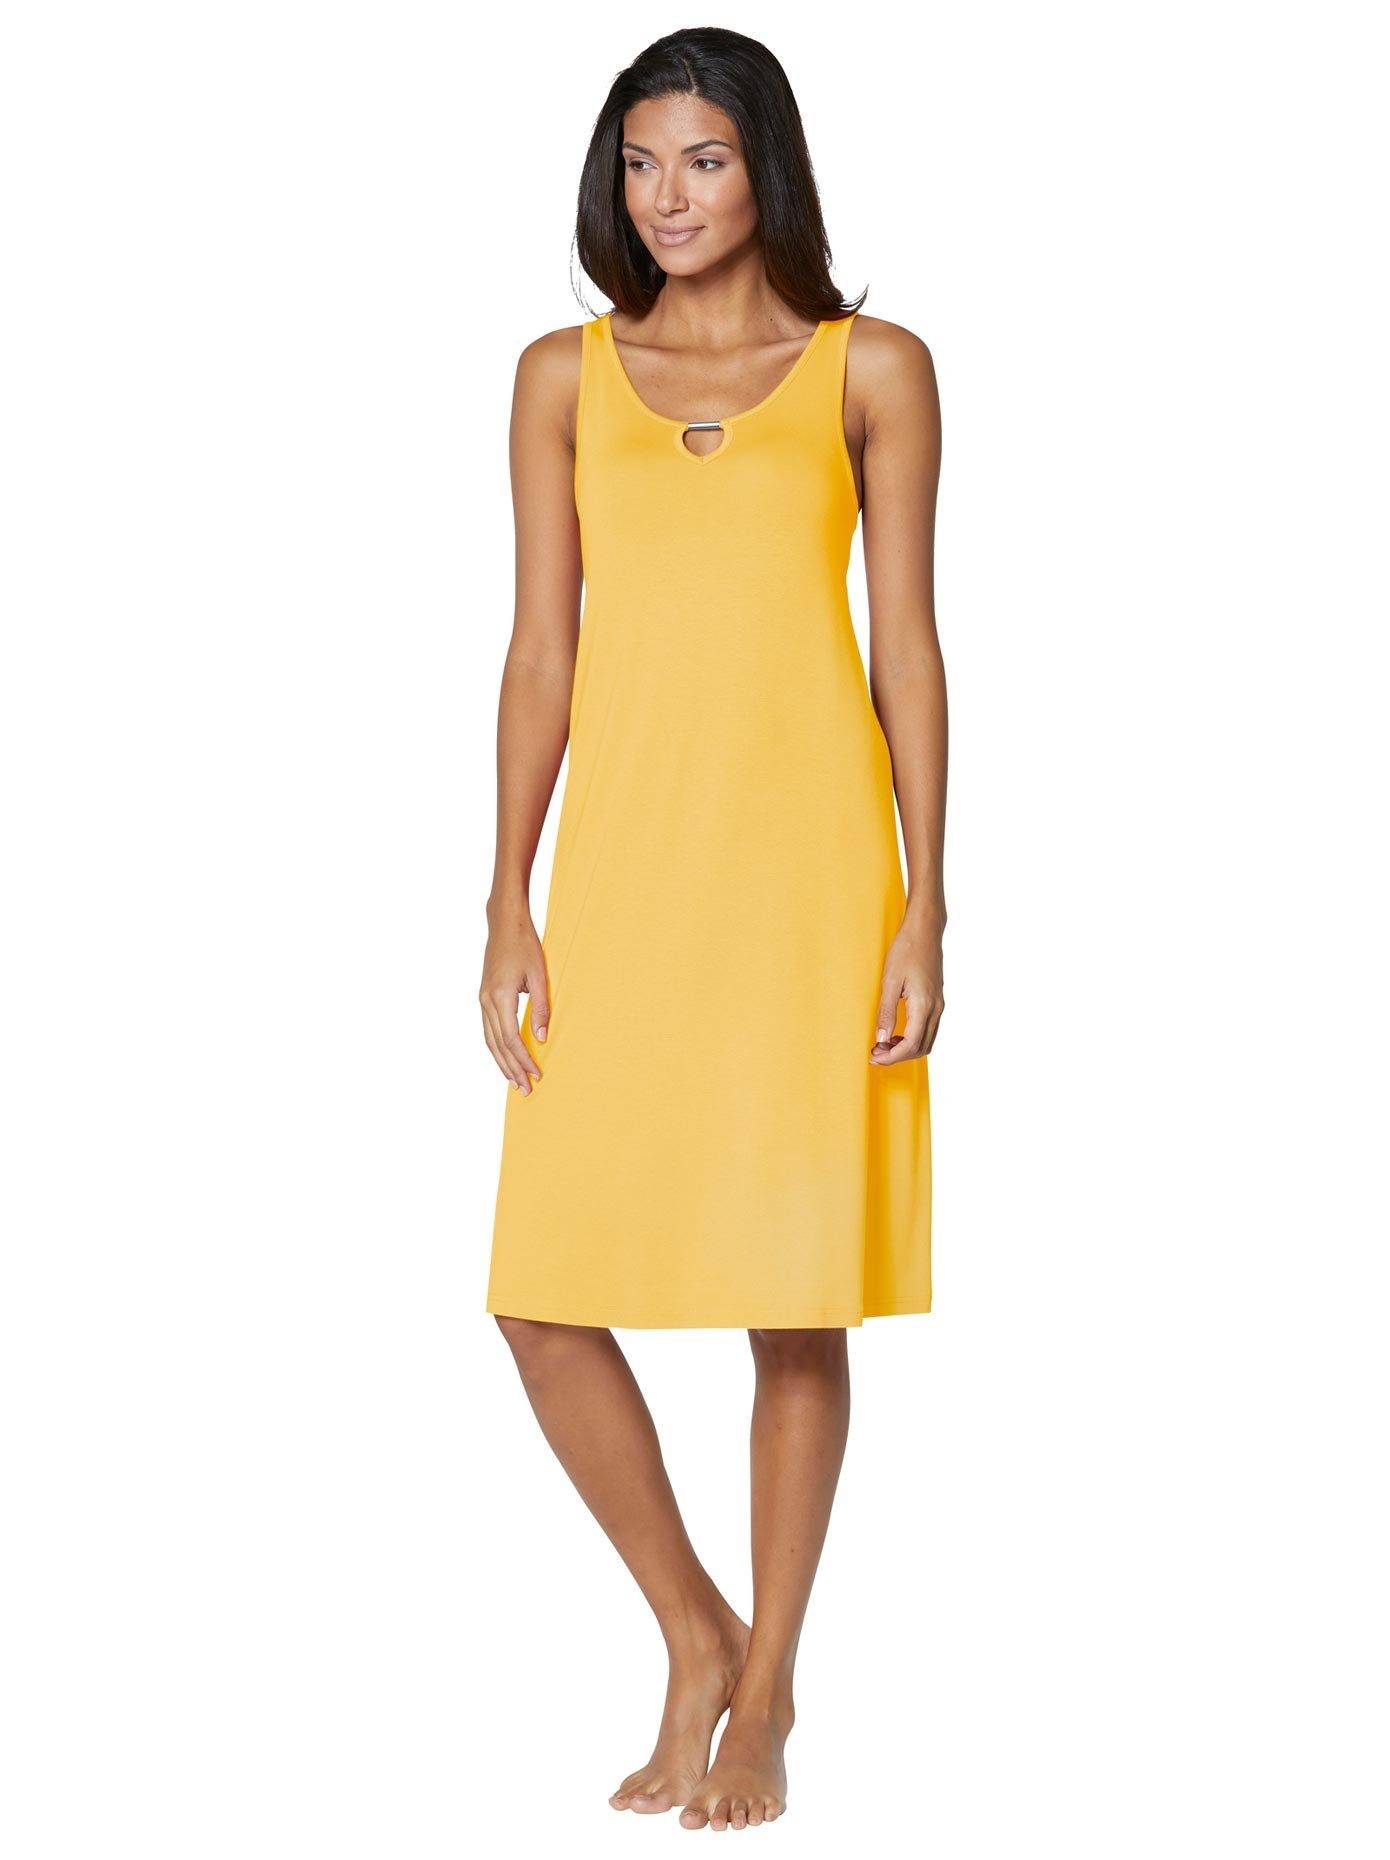 Gelbes Kleid online kaufen | OTTO